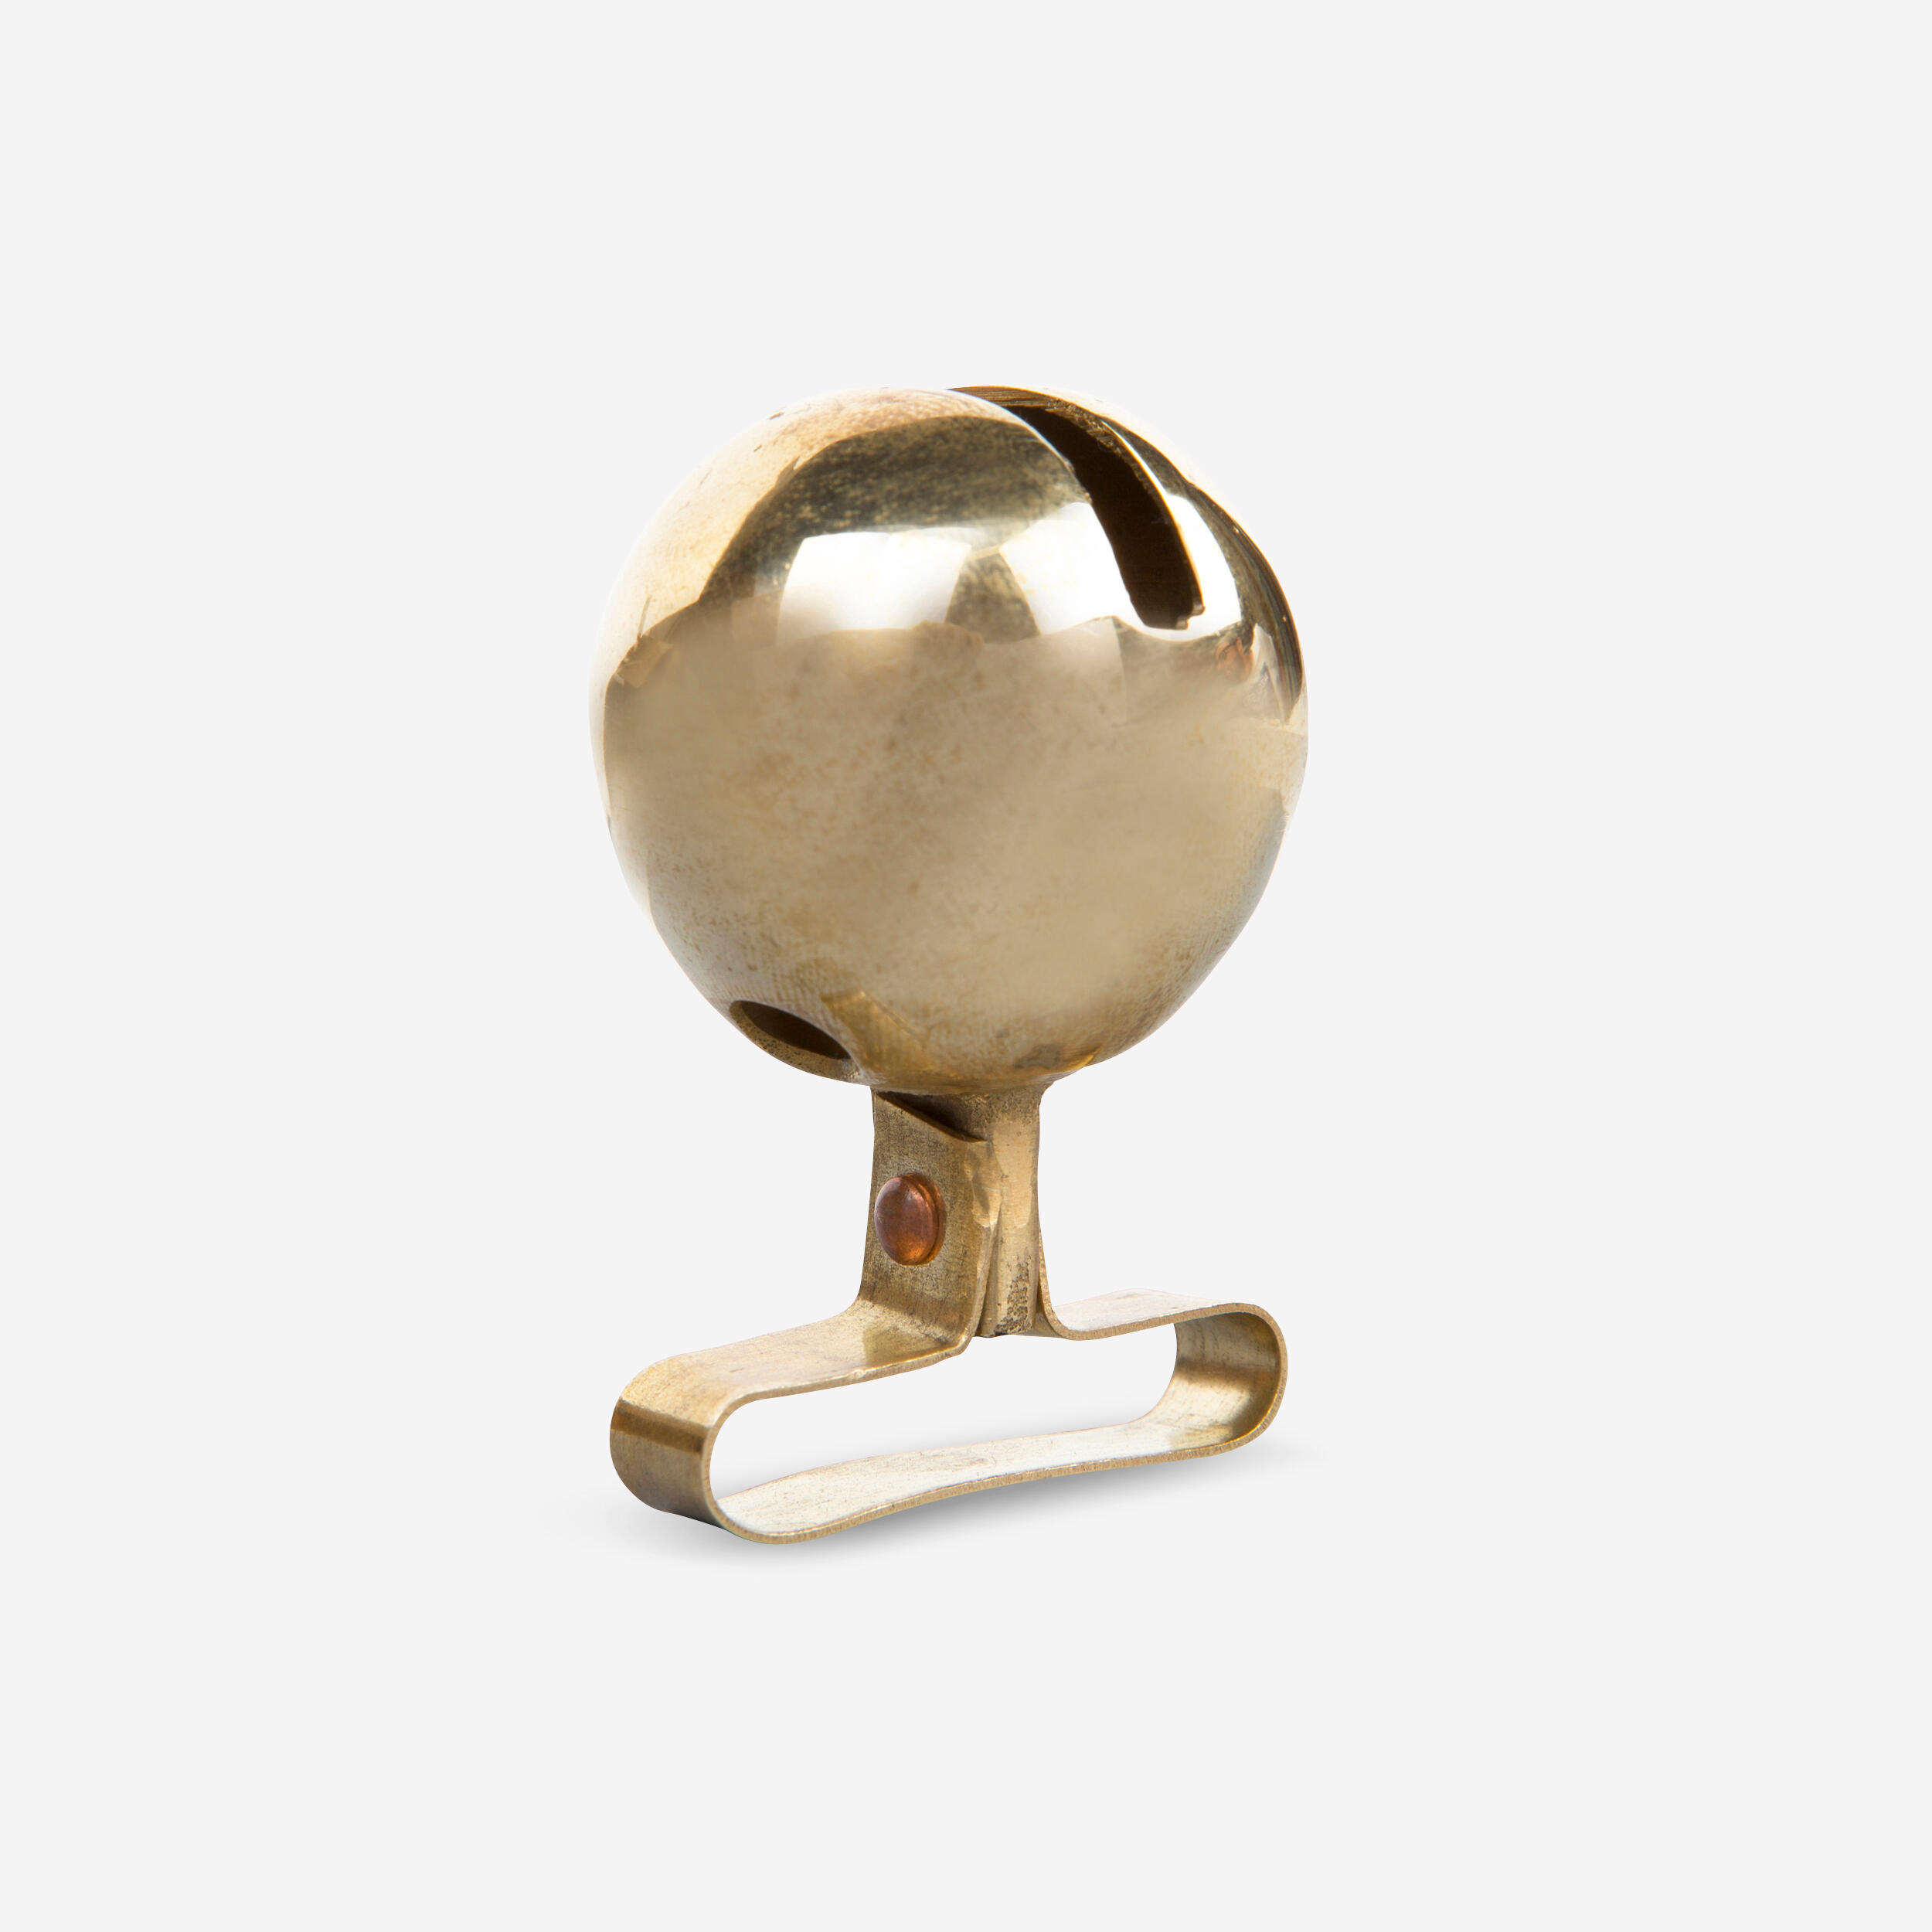 JANUEL Brass Roman Bell for Dogs